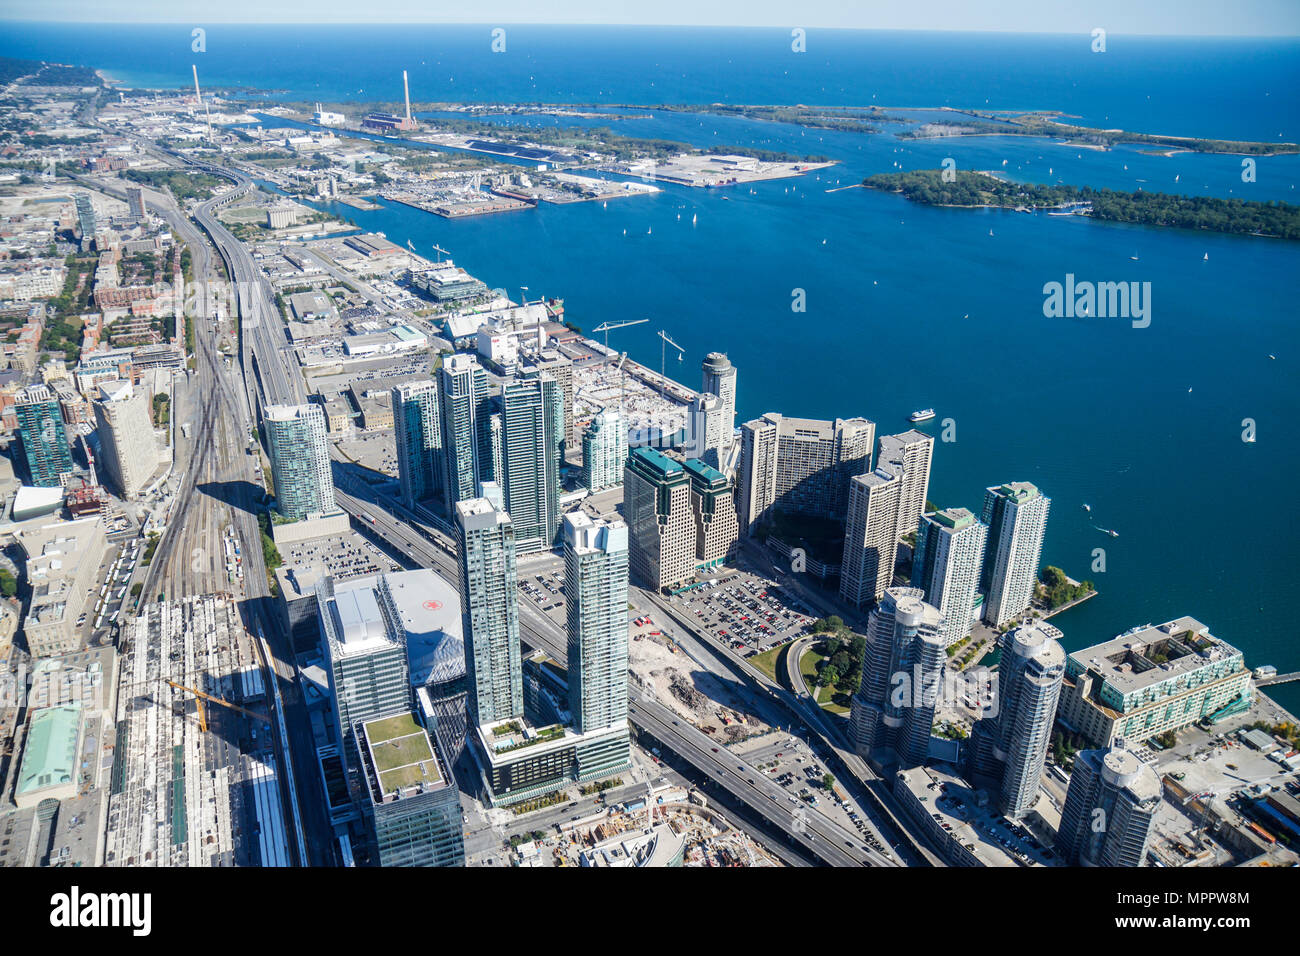 Toronto Canadá, CN Tower, Sky Pod, vista de la ventana al sudeste, Lake Ontario, puerto, puerto, frente al mar, Gardiner Expressway, rascacielos de gran altura Foto de stock